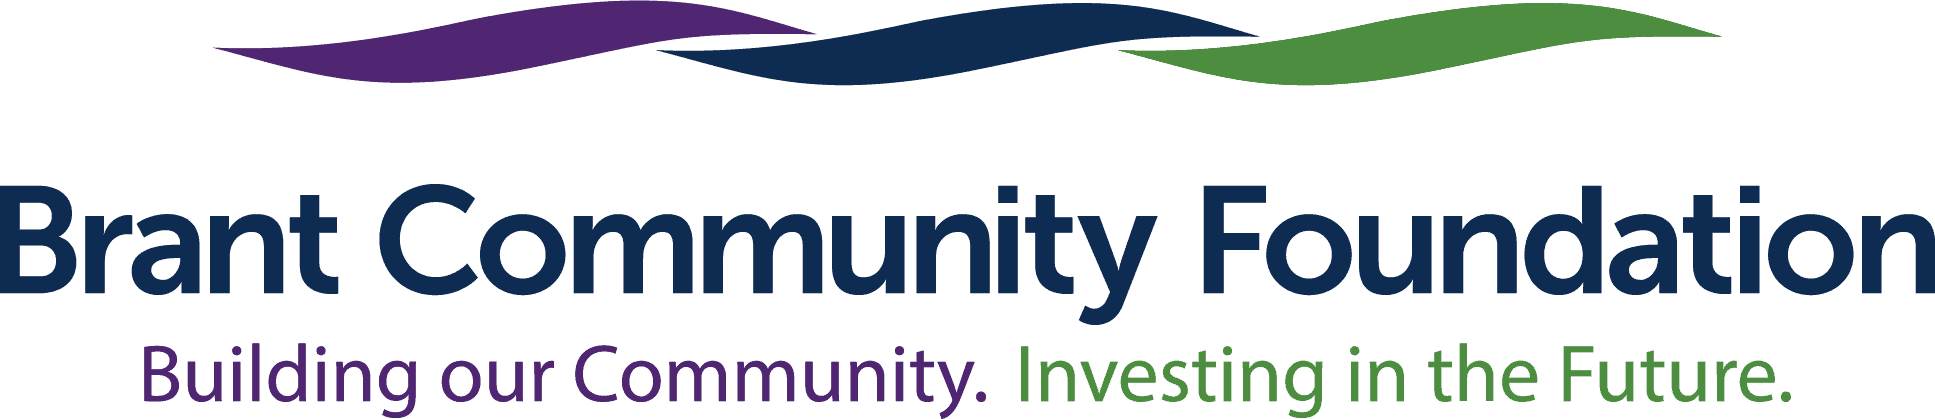 Brant Community Foundation